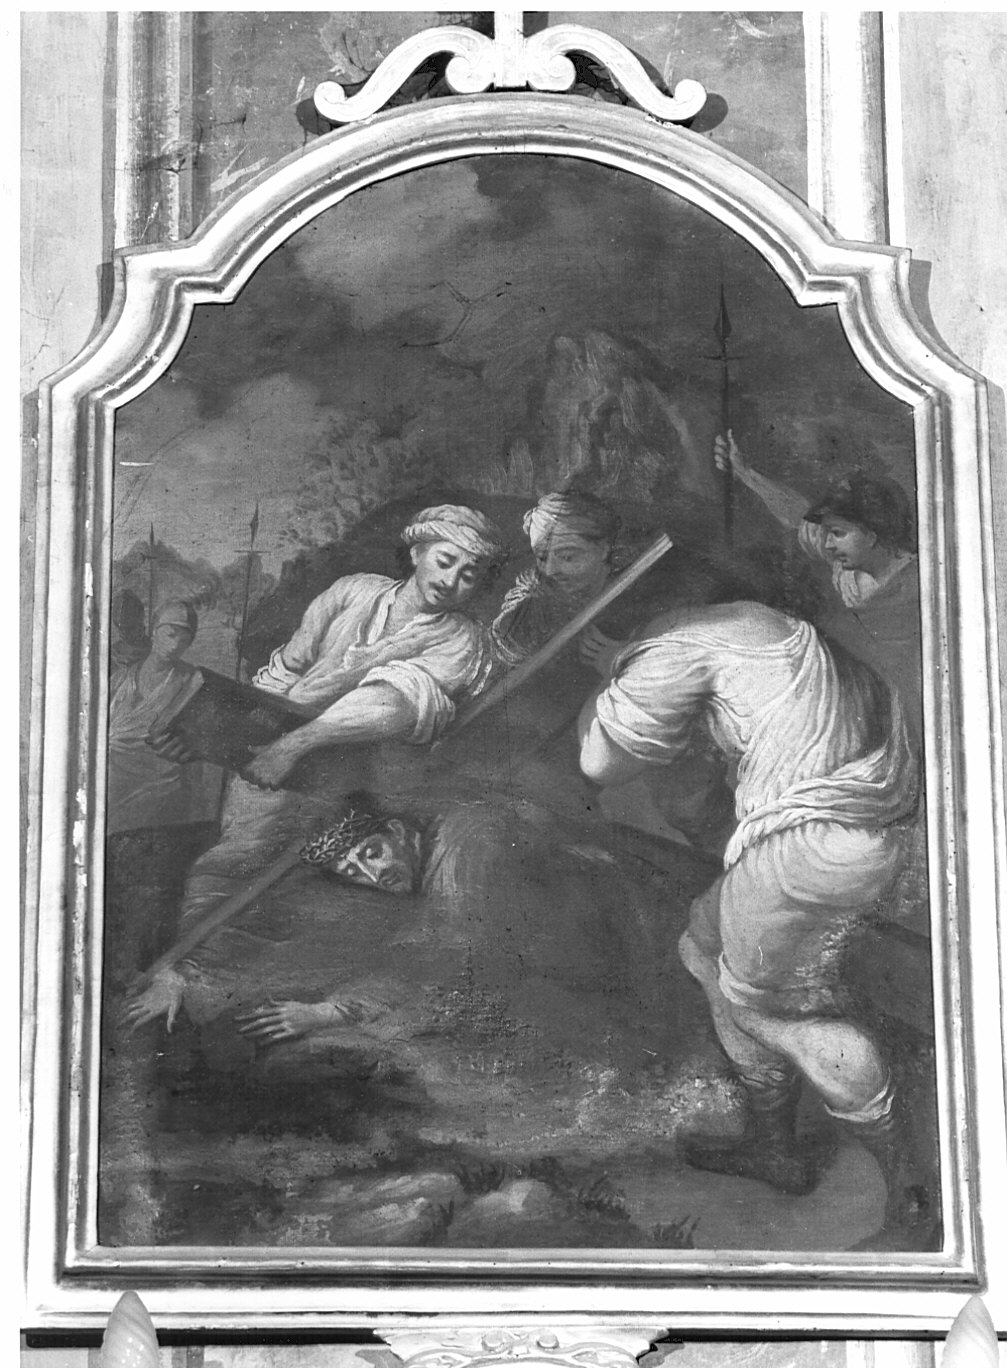 stazione III: Gesù cade sotto la croce la prima volta (dipinto, elemento d'insieme) - ambito lombardo (sec. XVIII)